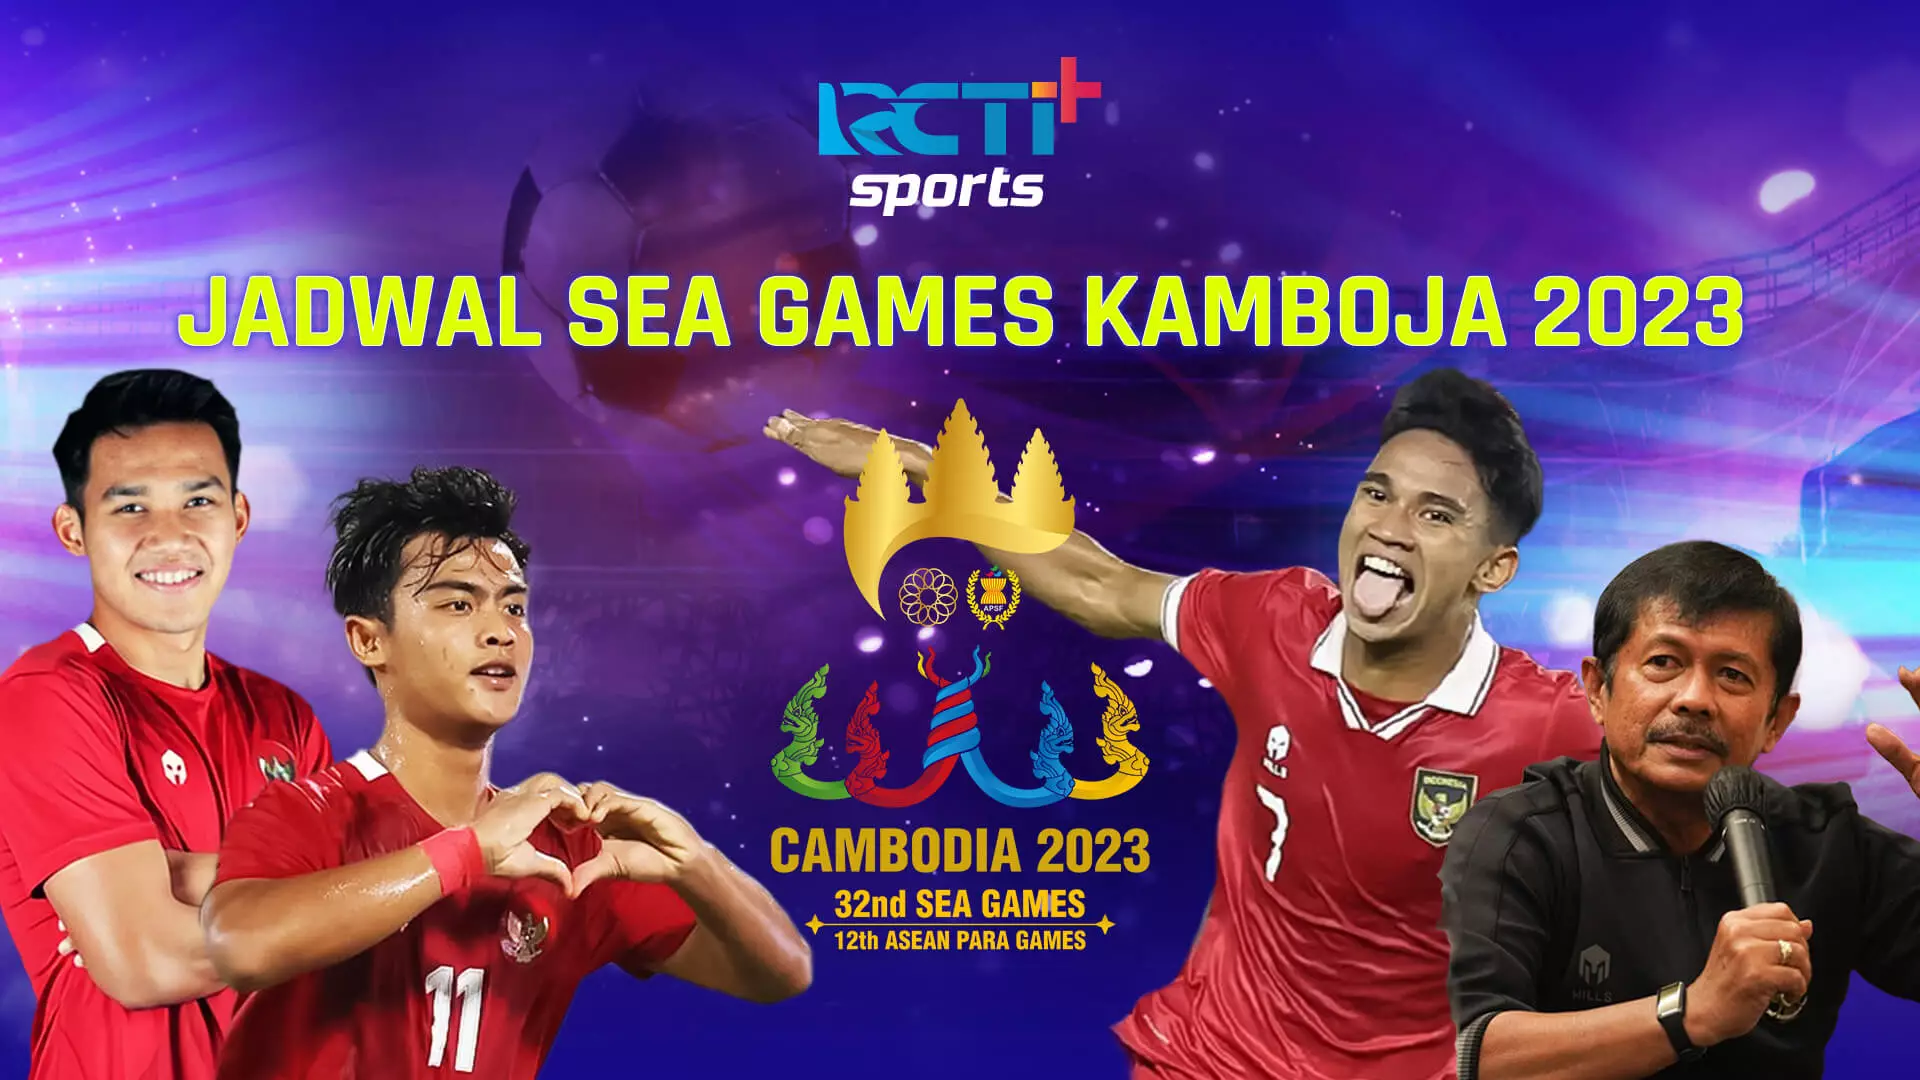 jadwal pertandingan bola sea games 2023 kamboja